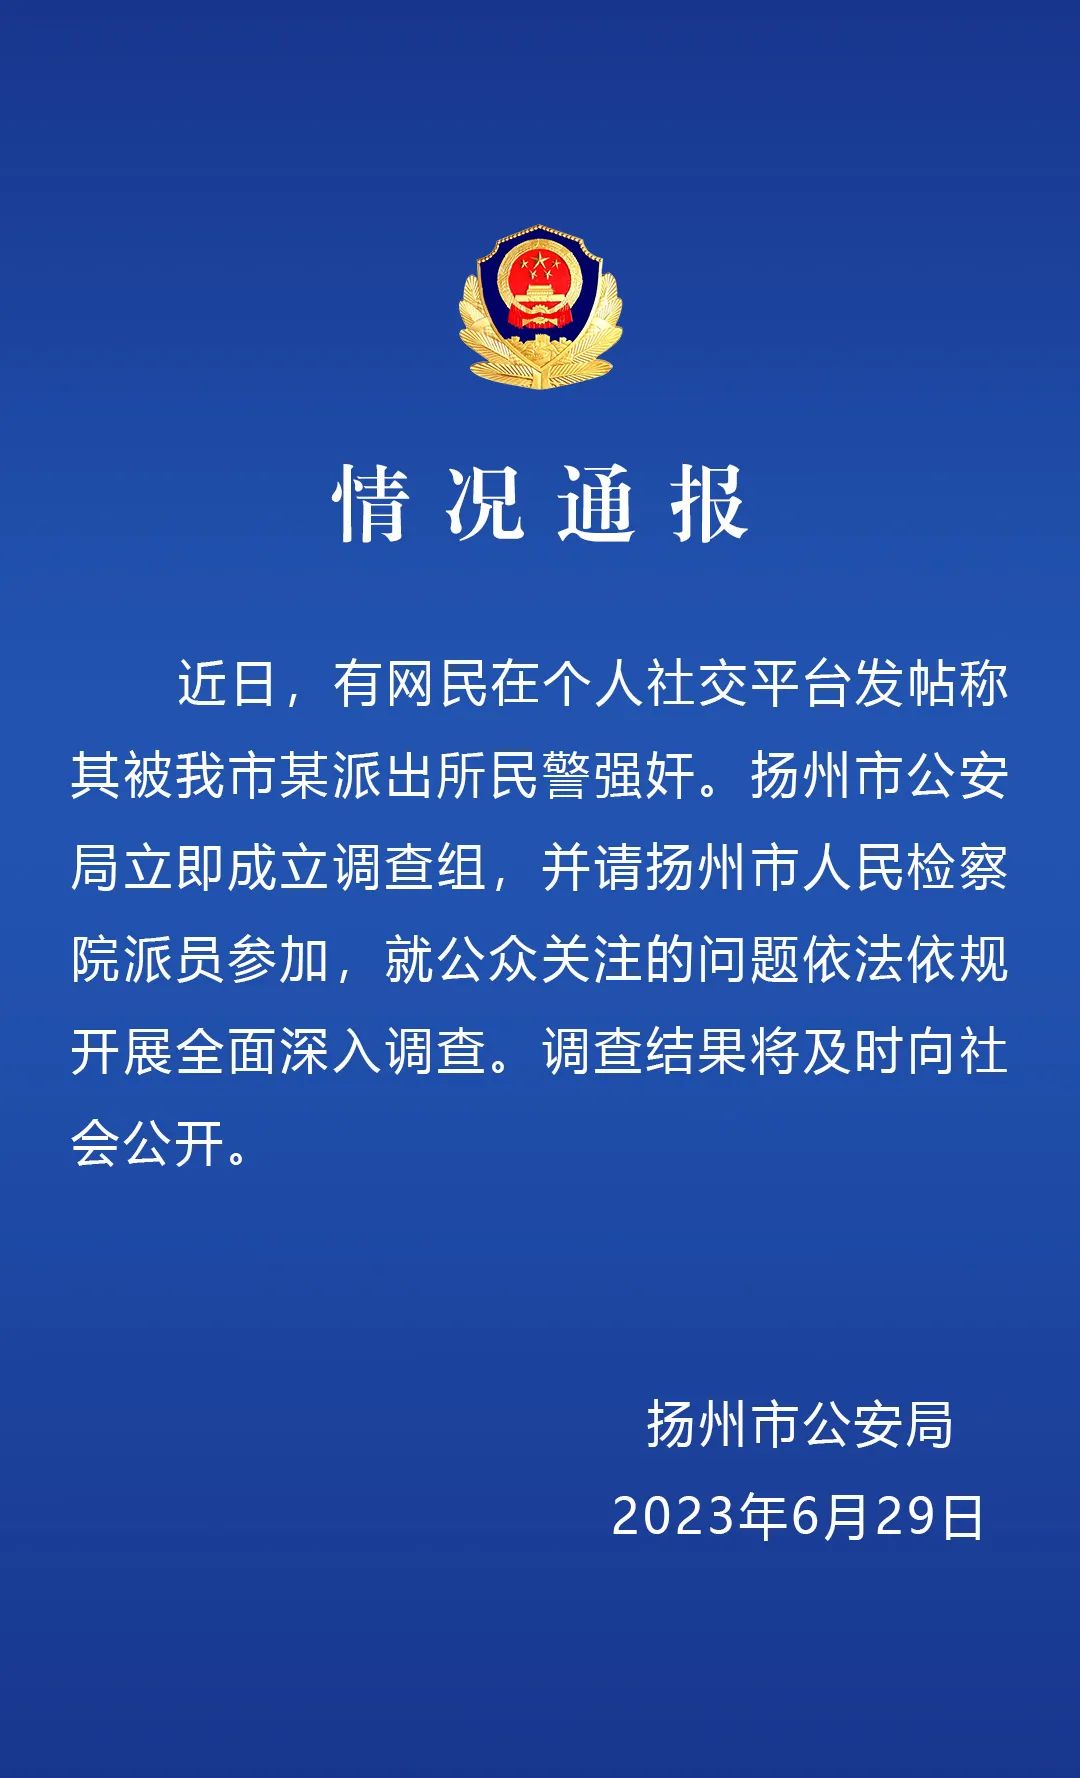 网友发文称被扬州一警察强奸，警方通报